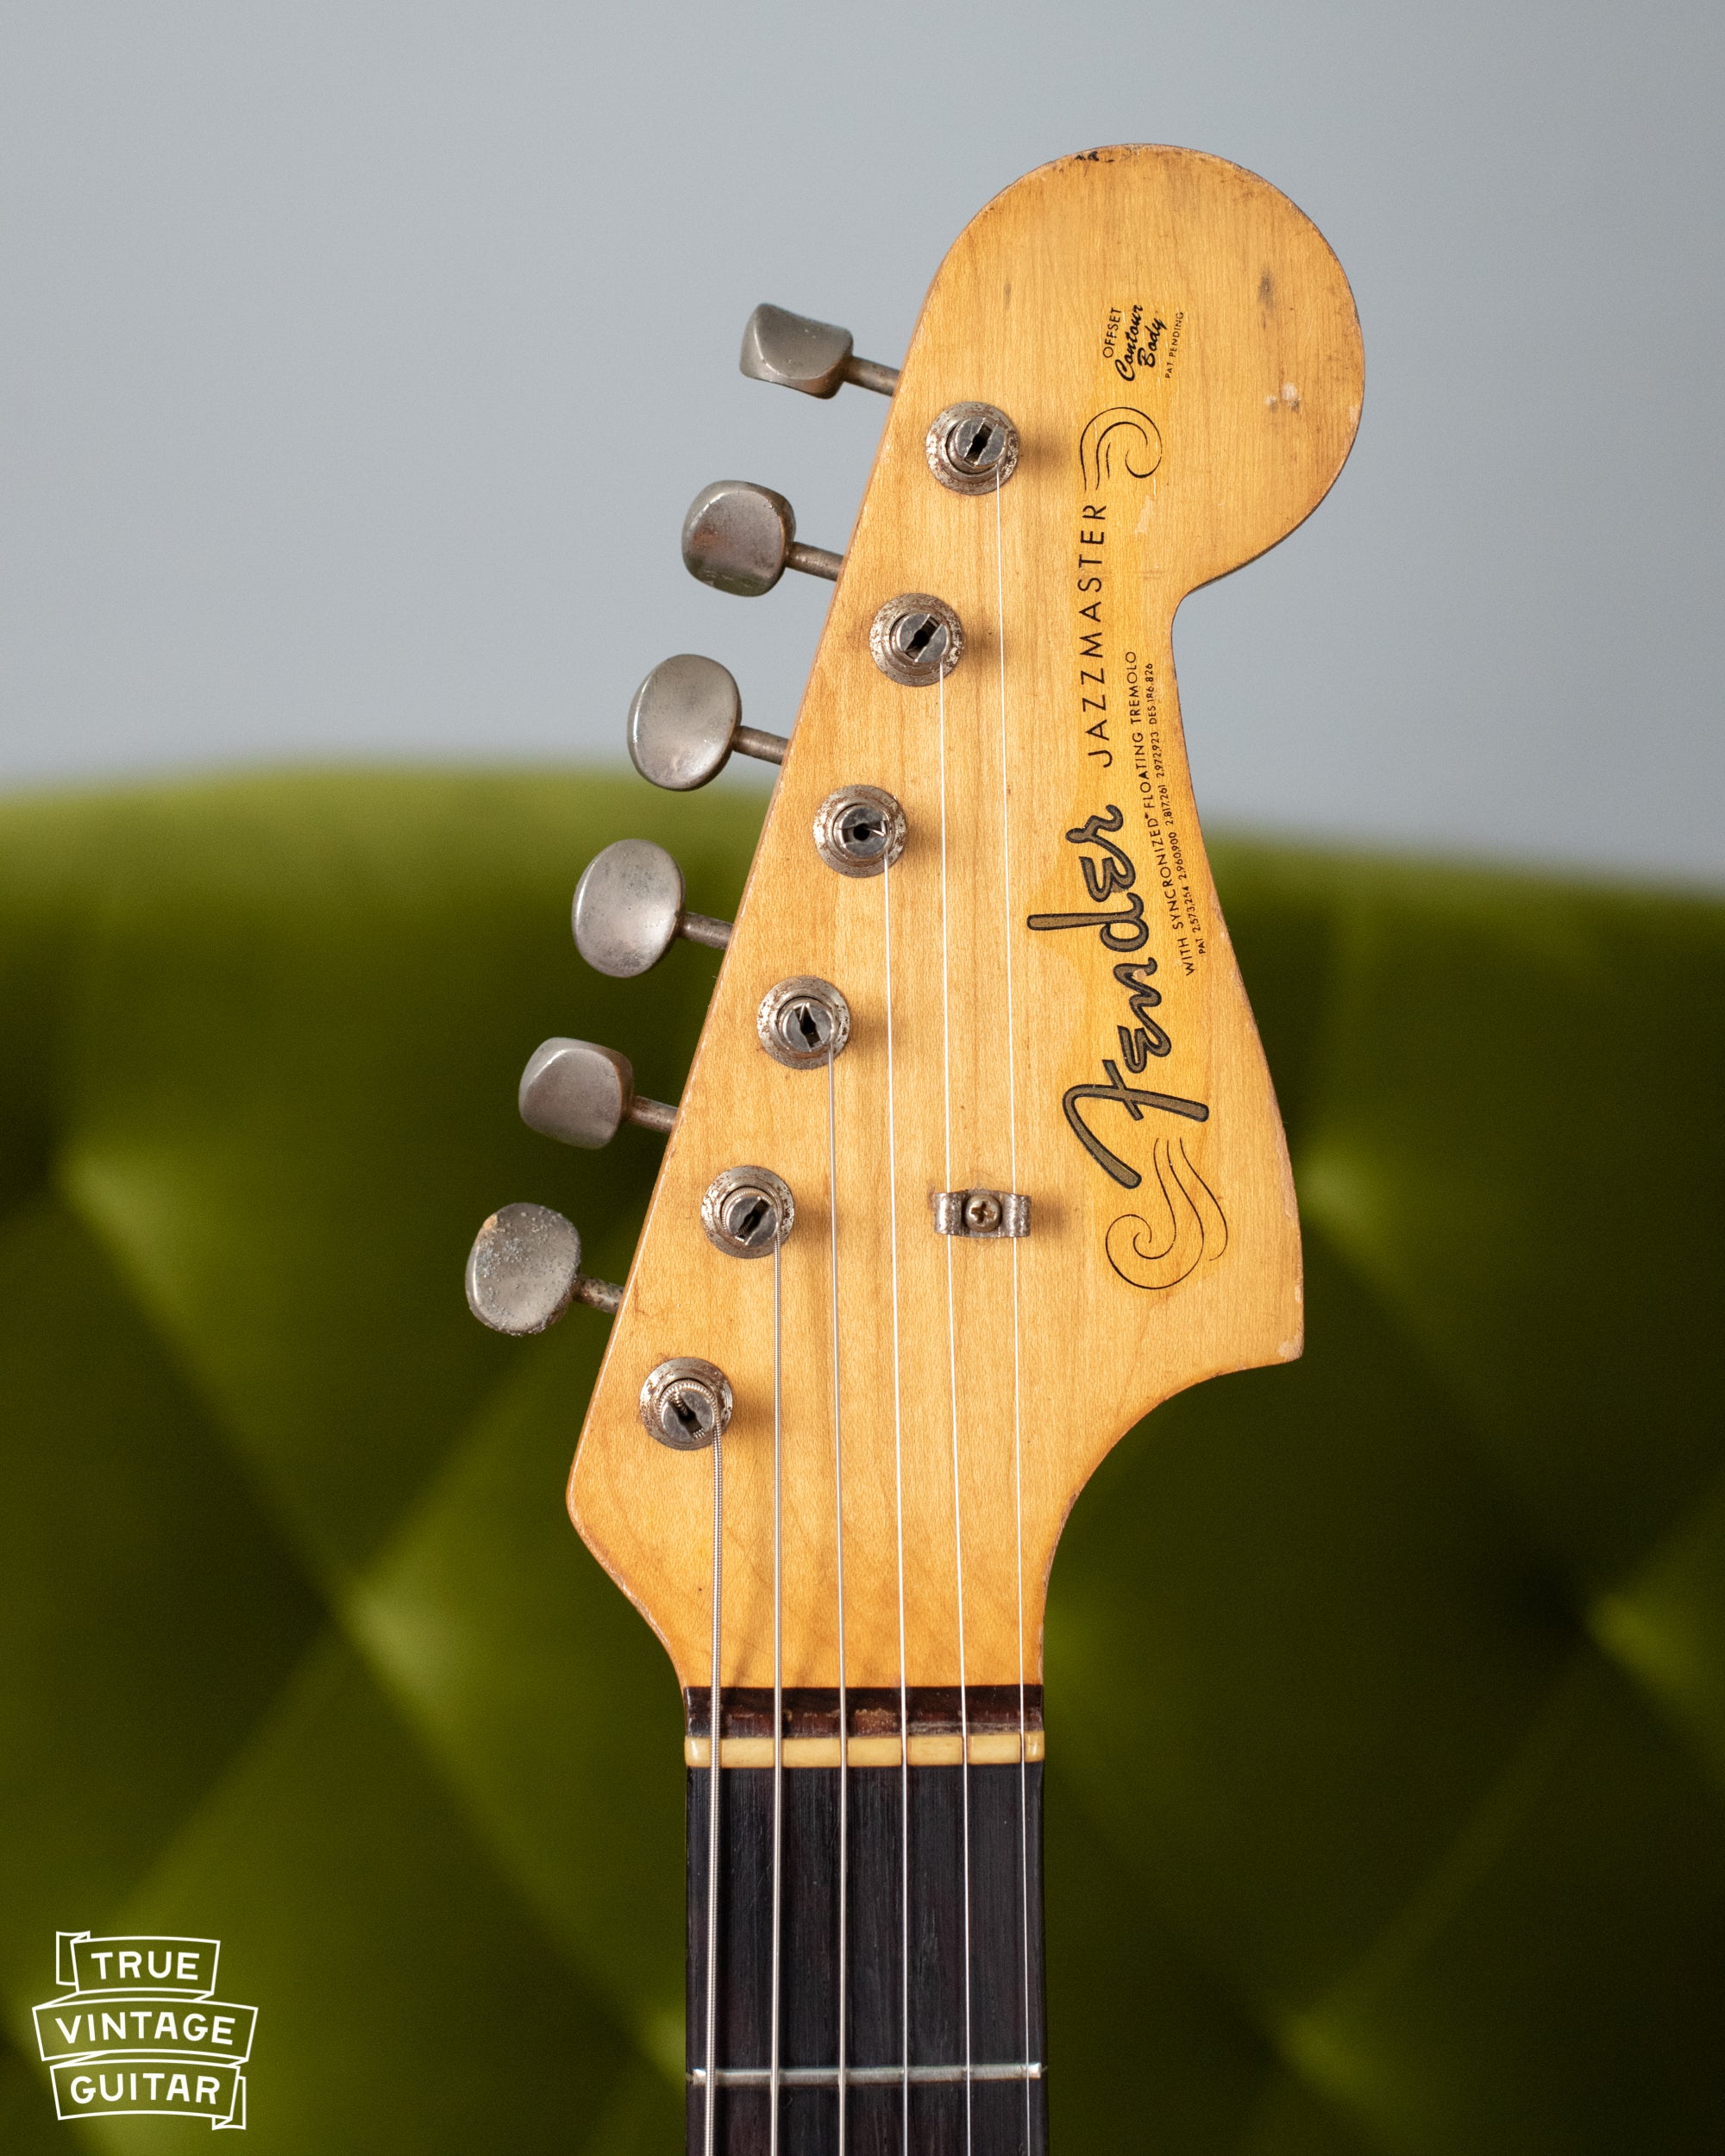 1963 Fender Jazzmaster neck headstock